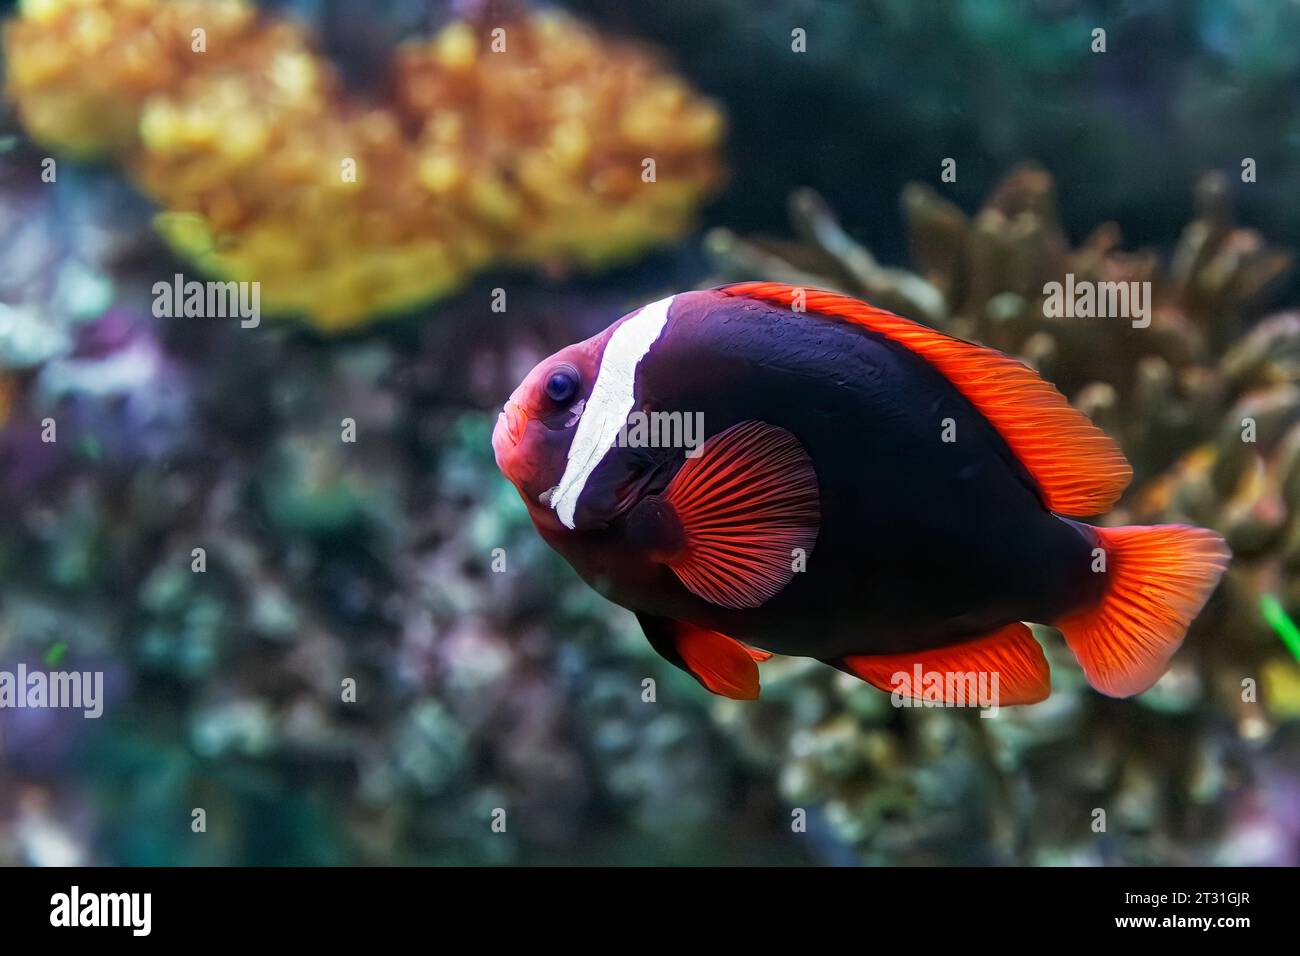 Poisson-clown femelle à la tomate (Amphiprion frenatus) alias : anémonefish à dos noir, anémonefish bridé, clown de feu et clown de tomate rouge. Banque D'Images